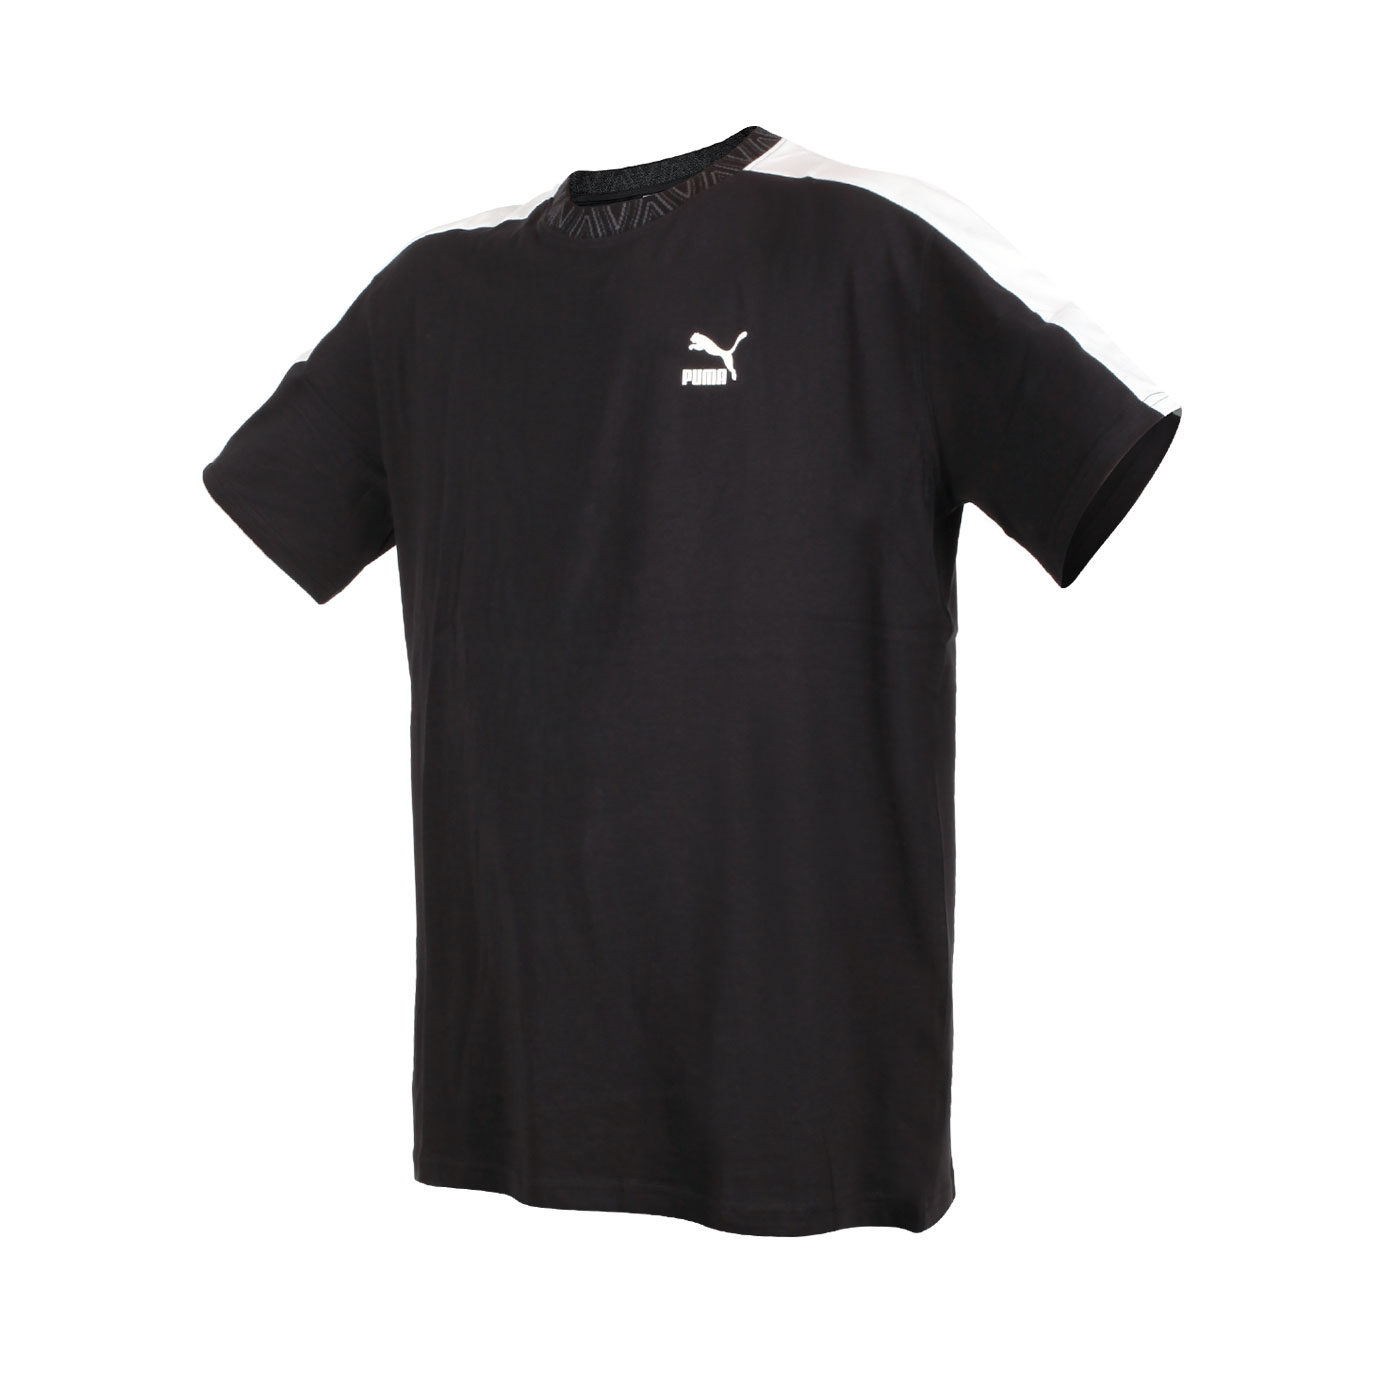 PUMA 男款流行系列Trend 7etter短袖T恤  53951601 - 黑白灰